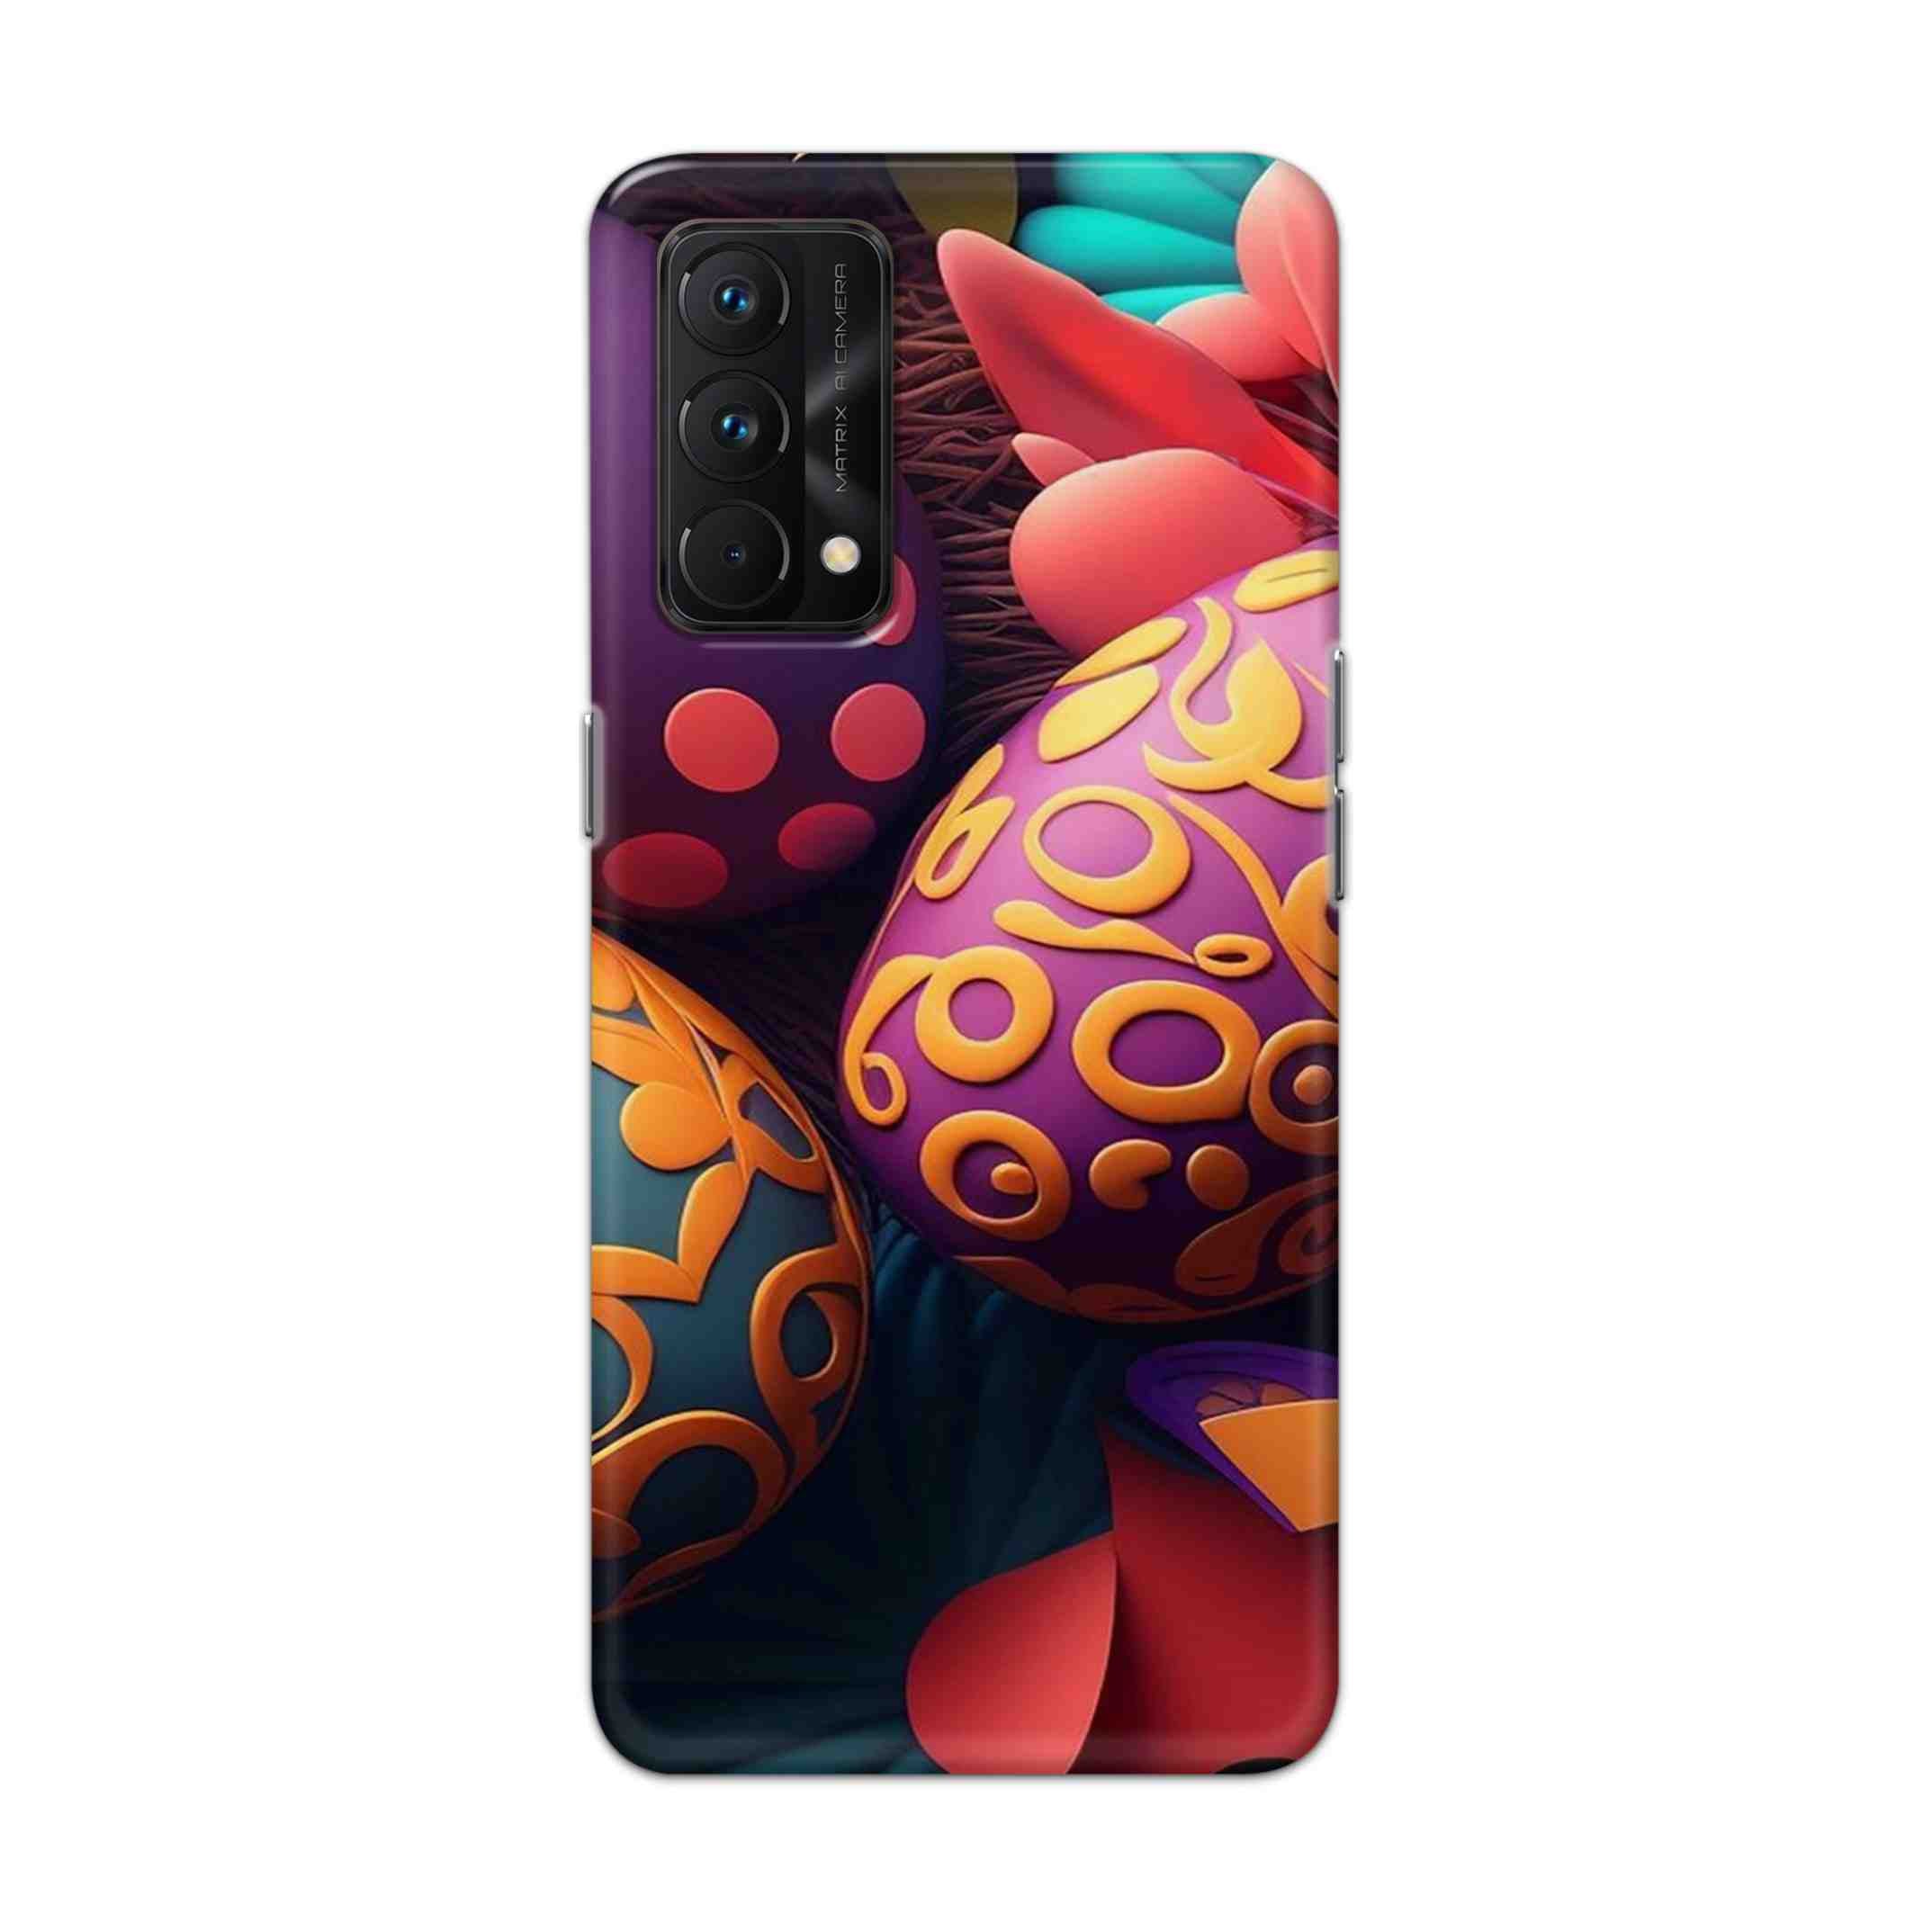 Buy Easter Egg Hard Back Mobile Phone Case Cover For Realme GT Master Online